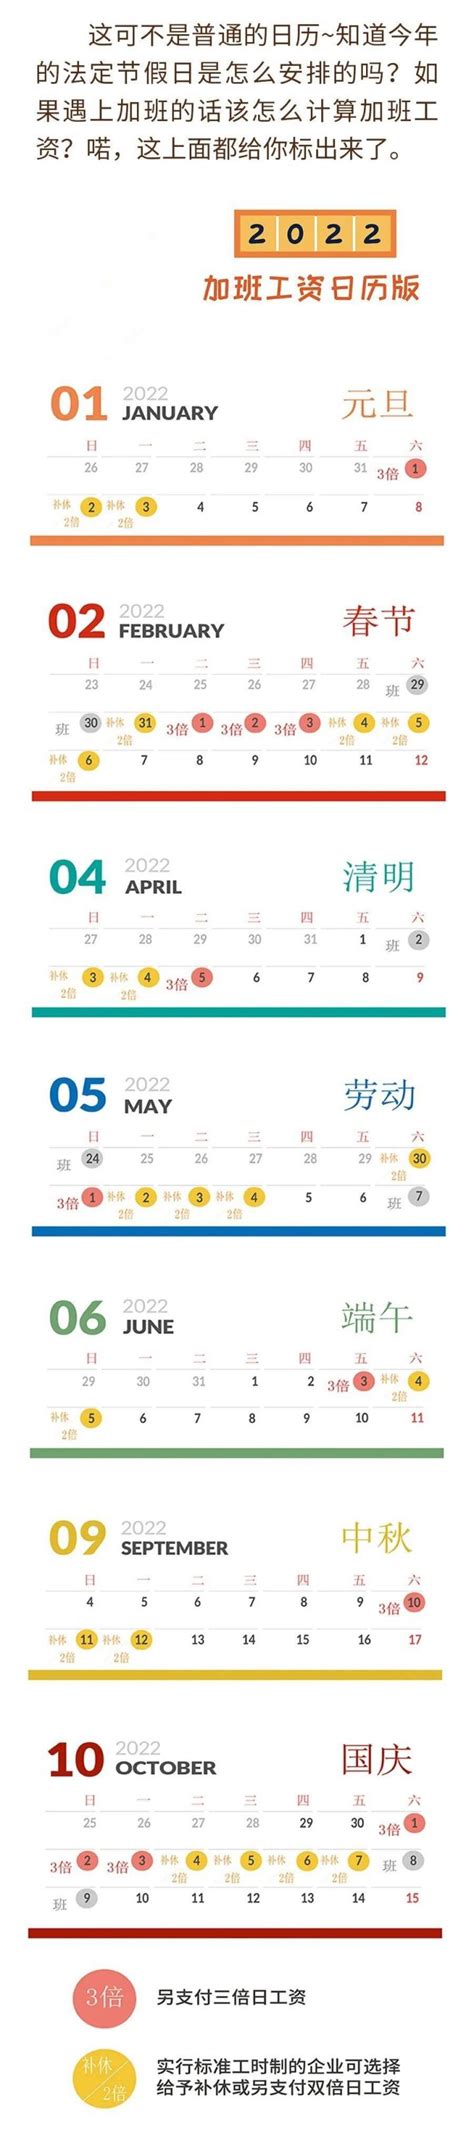 2022上海节假日加班工资怎么算(附计算方式)- 上海本地宝